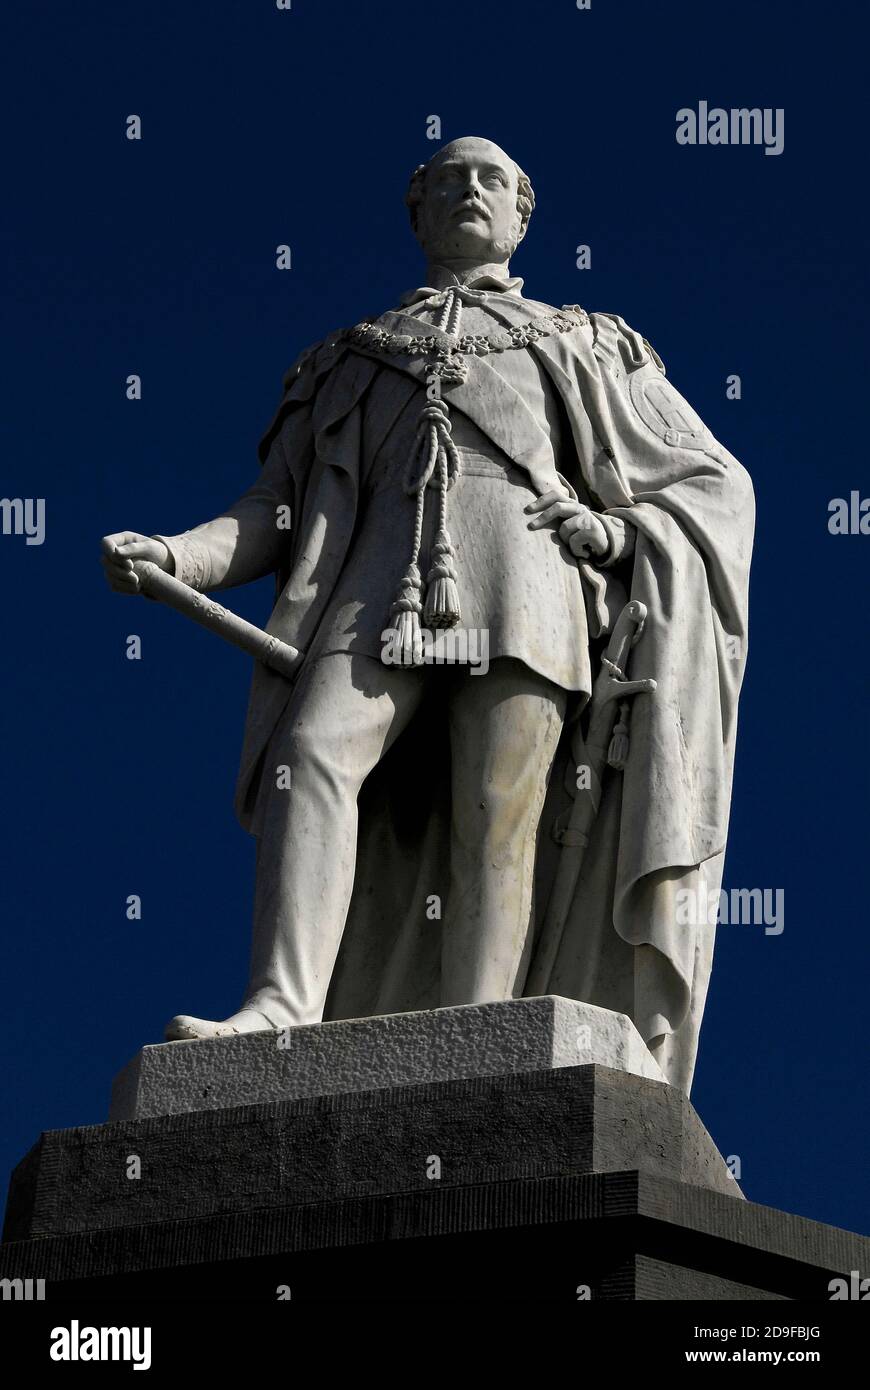 Il Principe Alberto (1819-1861), marito della Regina Vittoria (1819-1901), commemorato da questa statua in marmo siciliano bianco, alta 2.7 metri (9 piedi), che si erge su una base sul promontorio di Castle Hill a Tenby, Pembrokeshire, Galles, Regno Unito. Il memoriale del Principe Consort era inteso come il memoriale nazionale gallese al principe tedesco-sopportato. Fu opera dello scultore gallese John Evan Thomas (1810-1873), un frequente espositore alla Royal Academy di Londra tra il 1835 e il 1862. Foto Stock